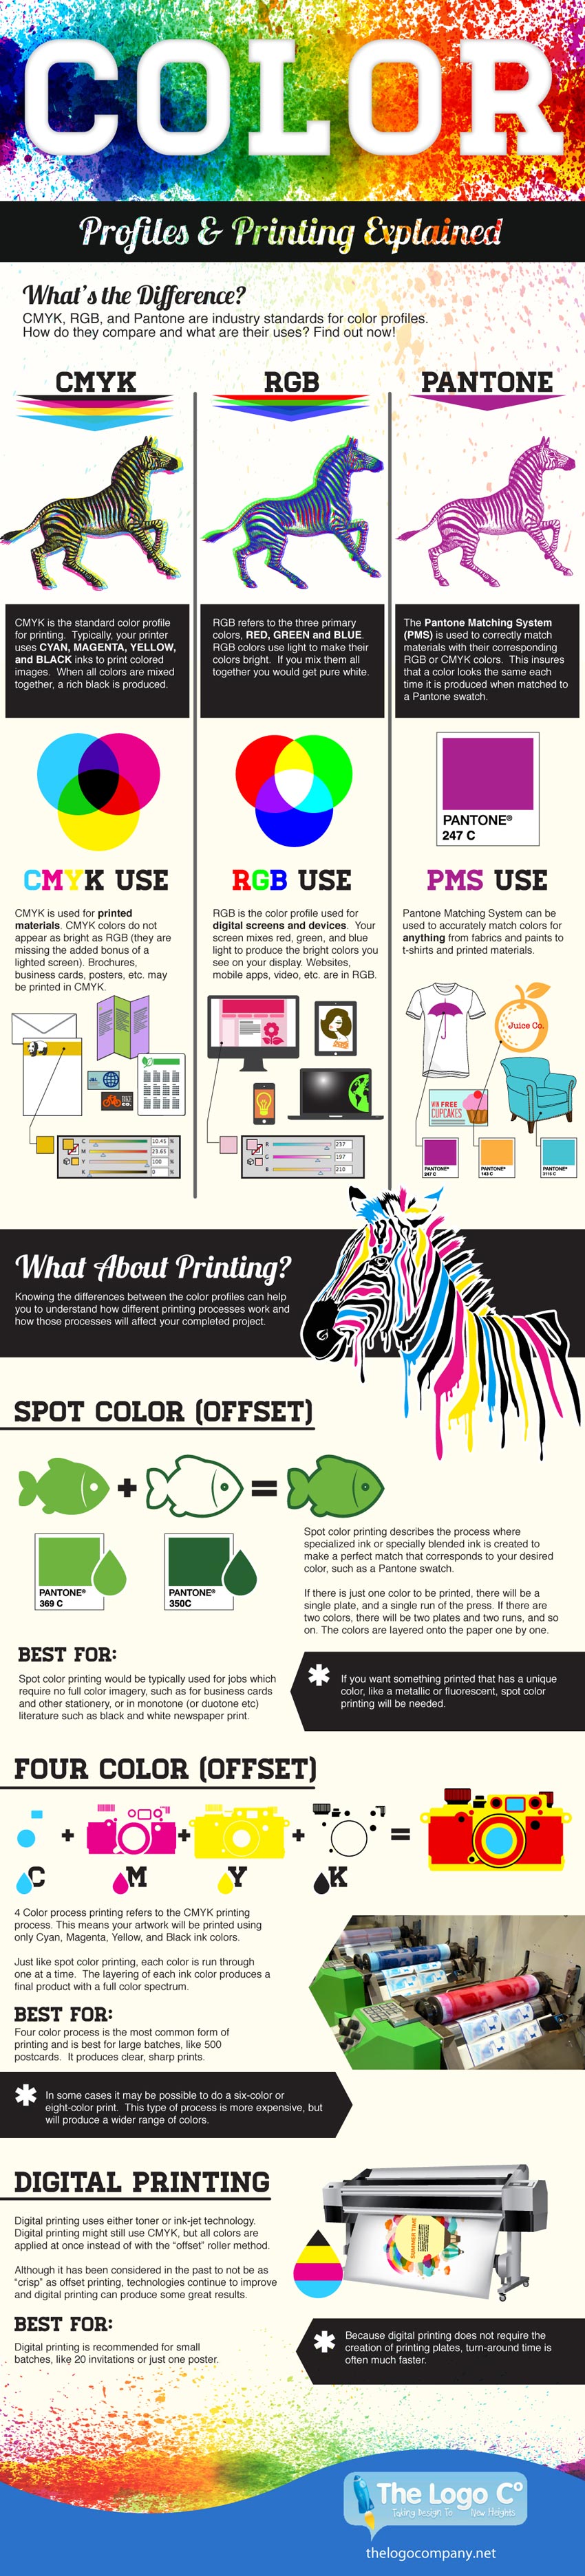 color-print-profiles